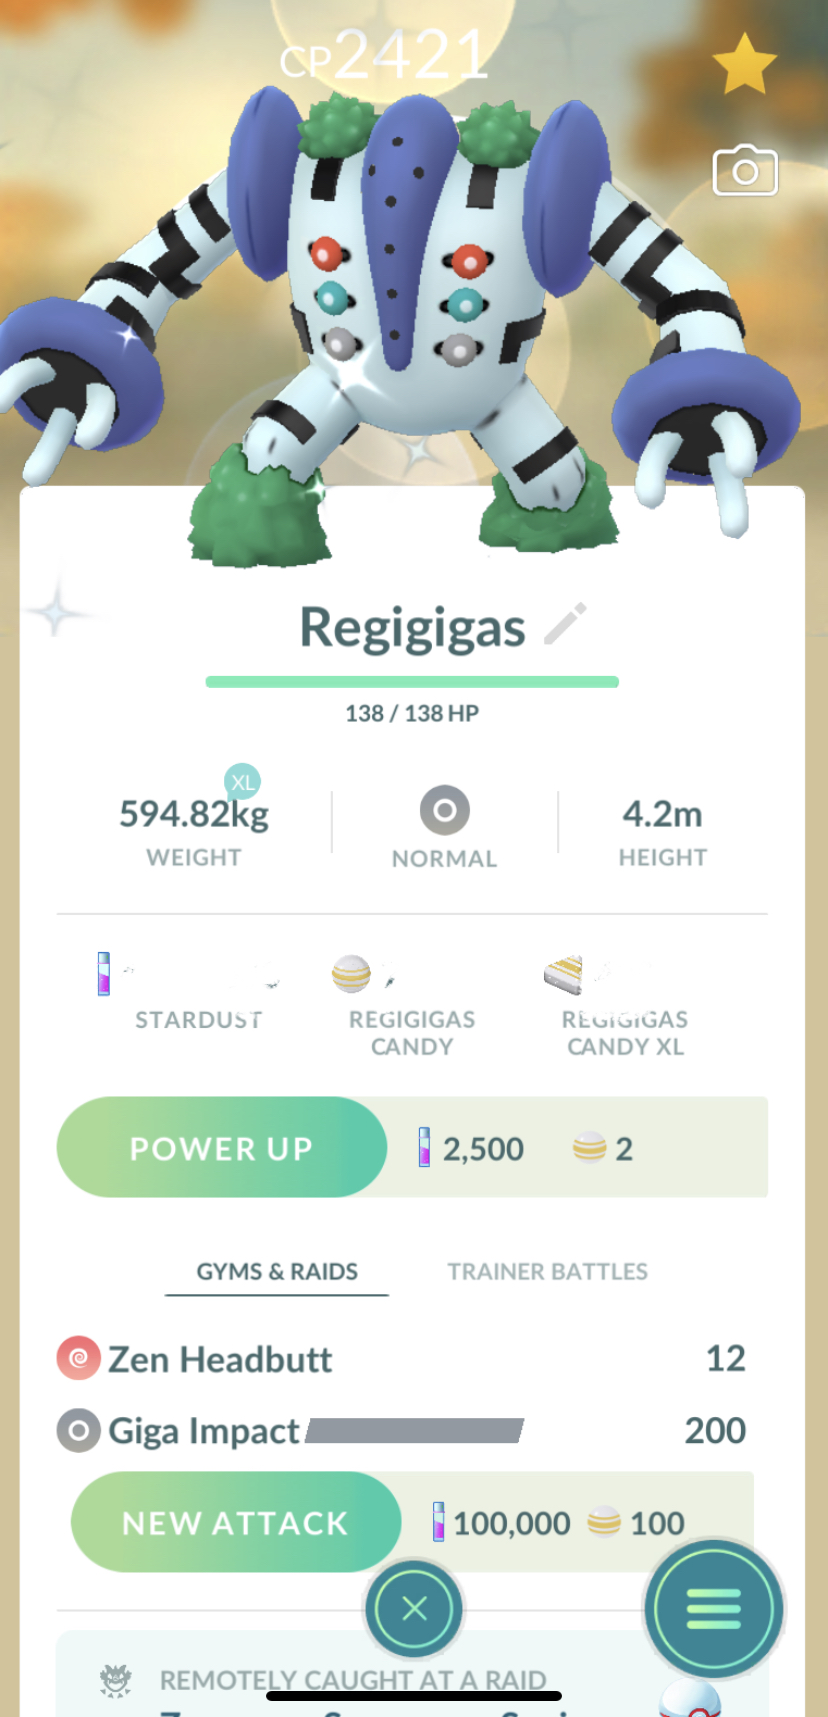 Pokémon GO - The Best Regigigas Counters, How to Get Shiny Regigigas